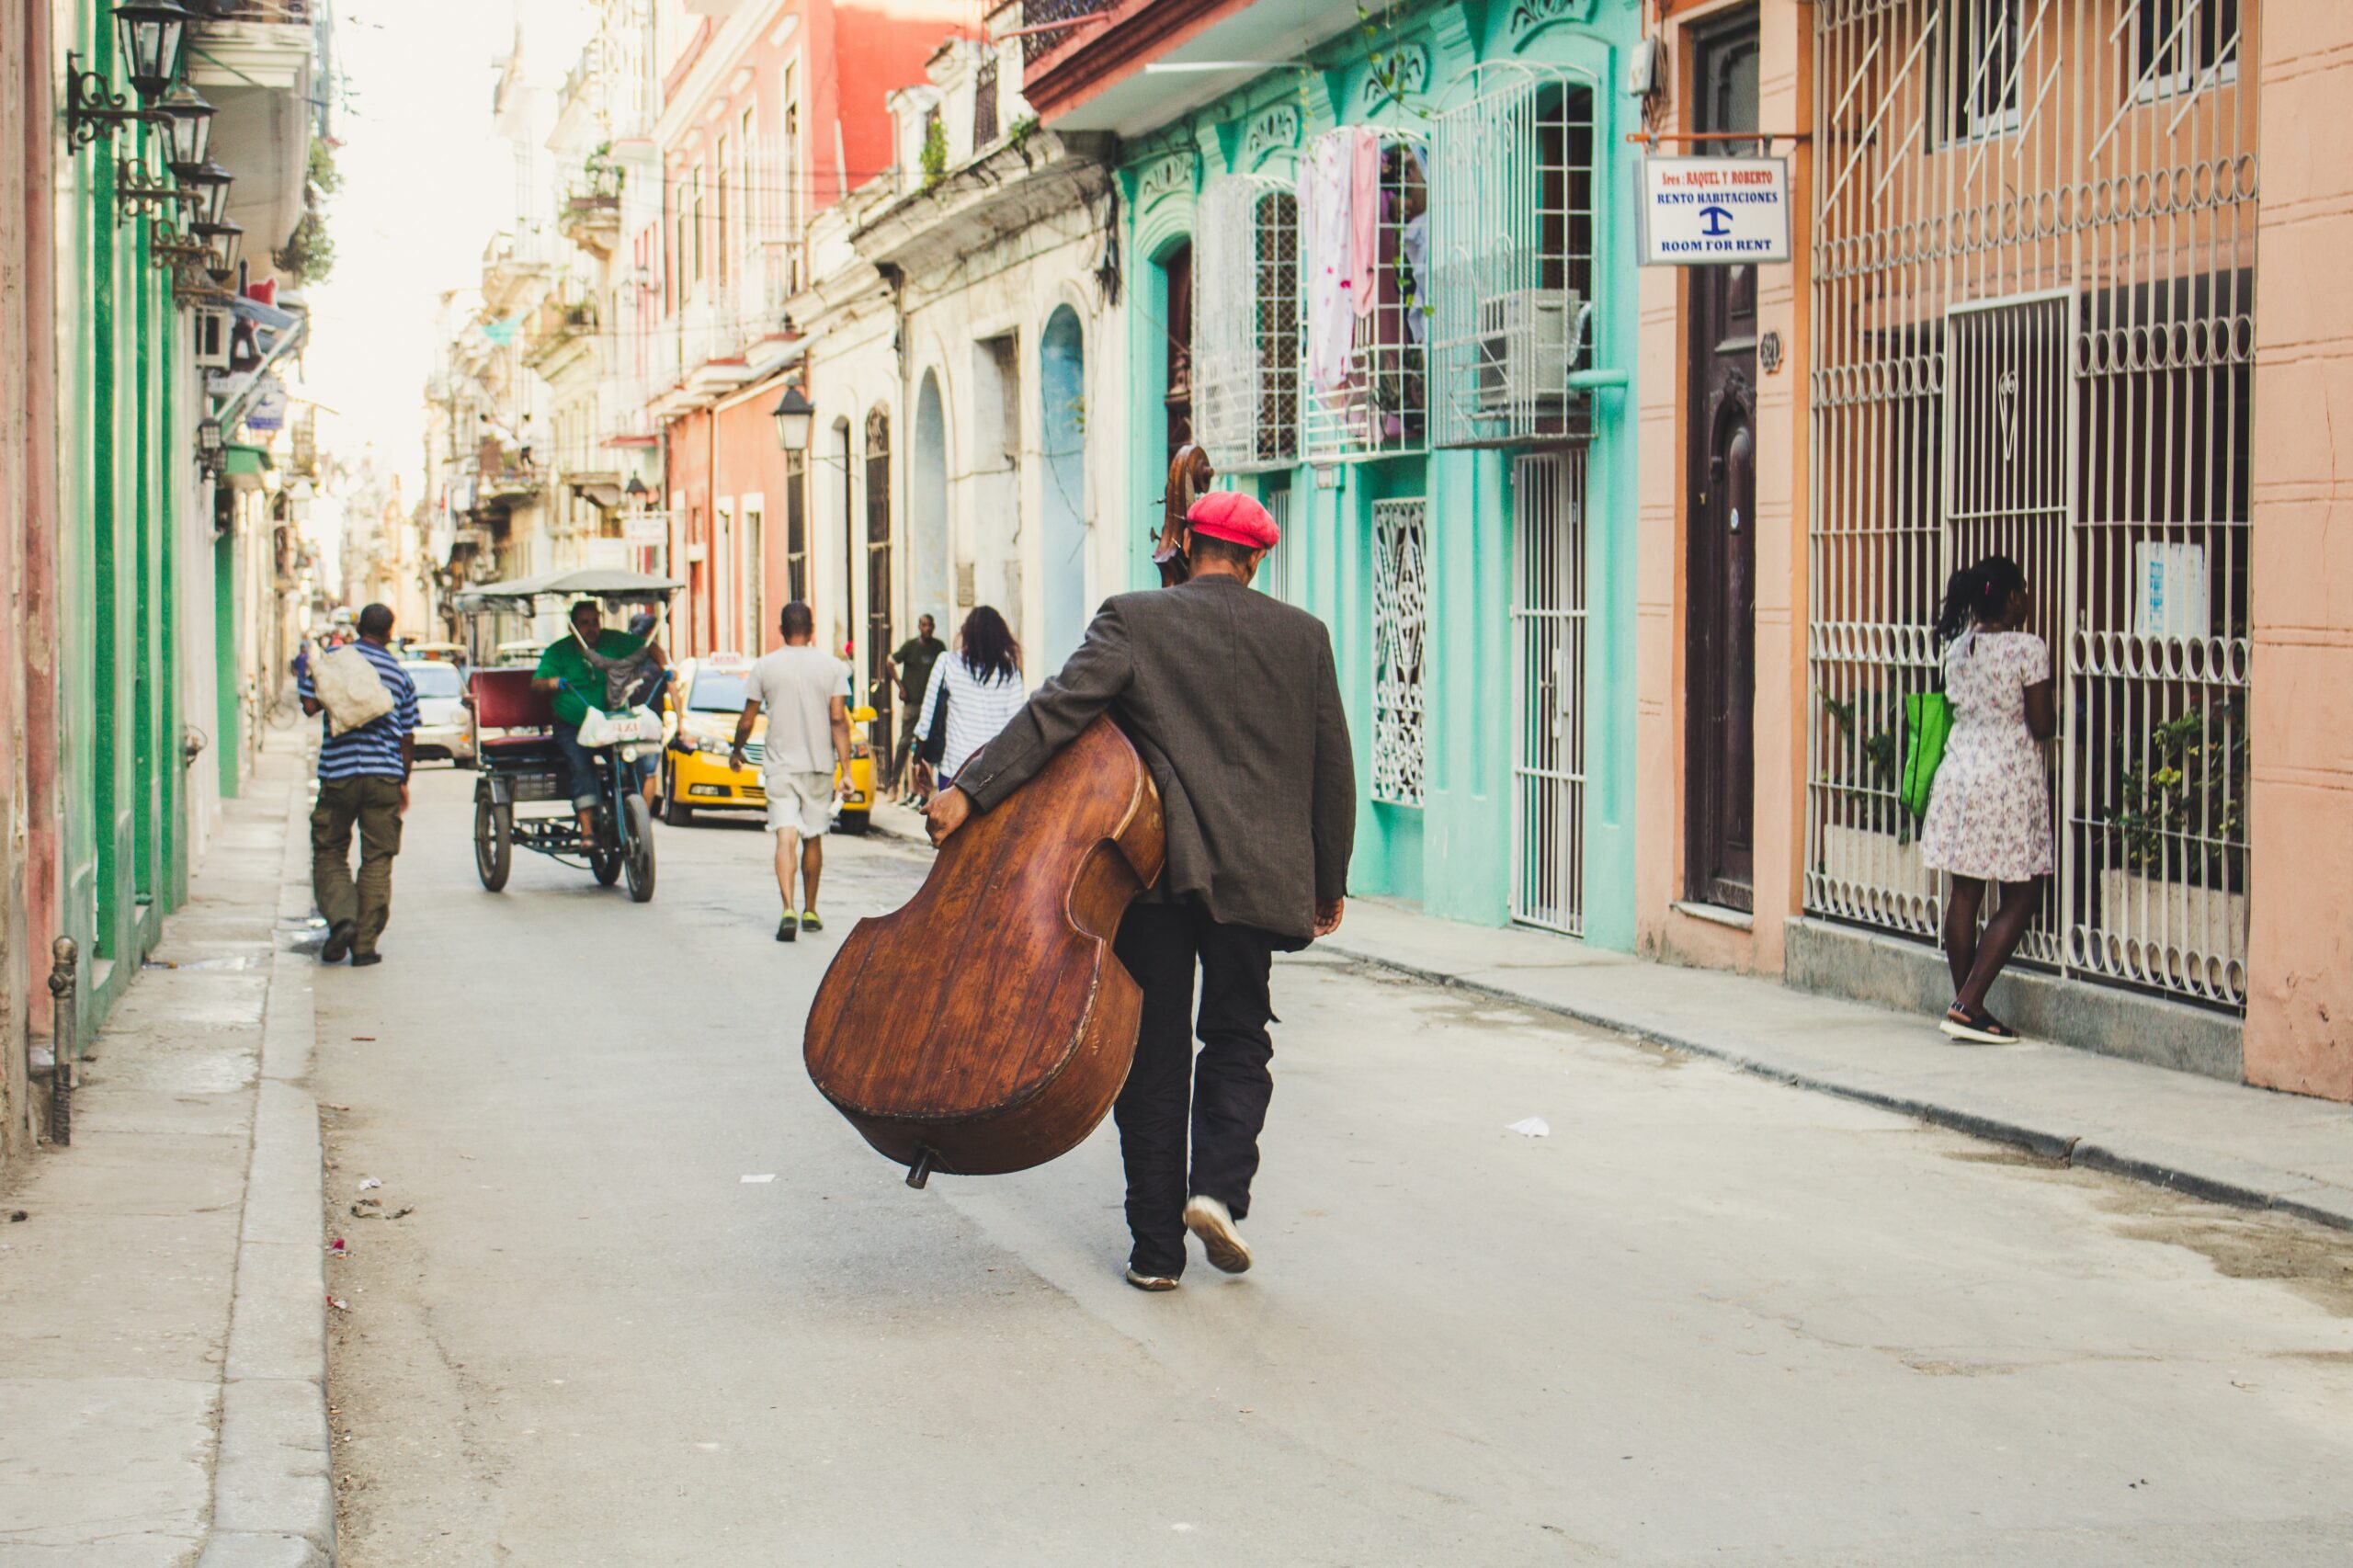 Música de Cuba — homem caminha pelas ruas de Havana com violoncelo.